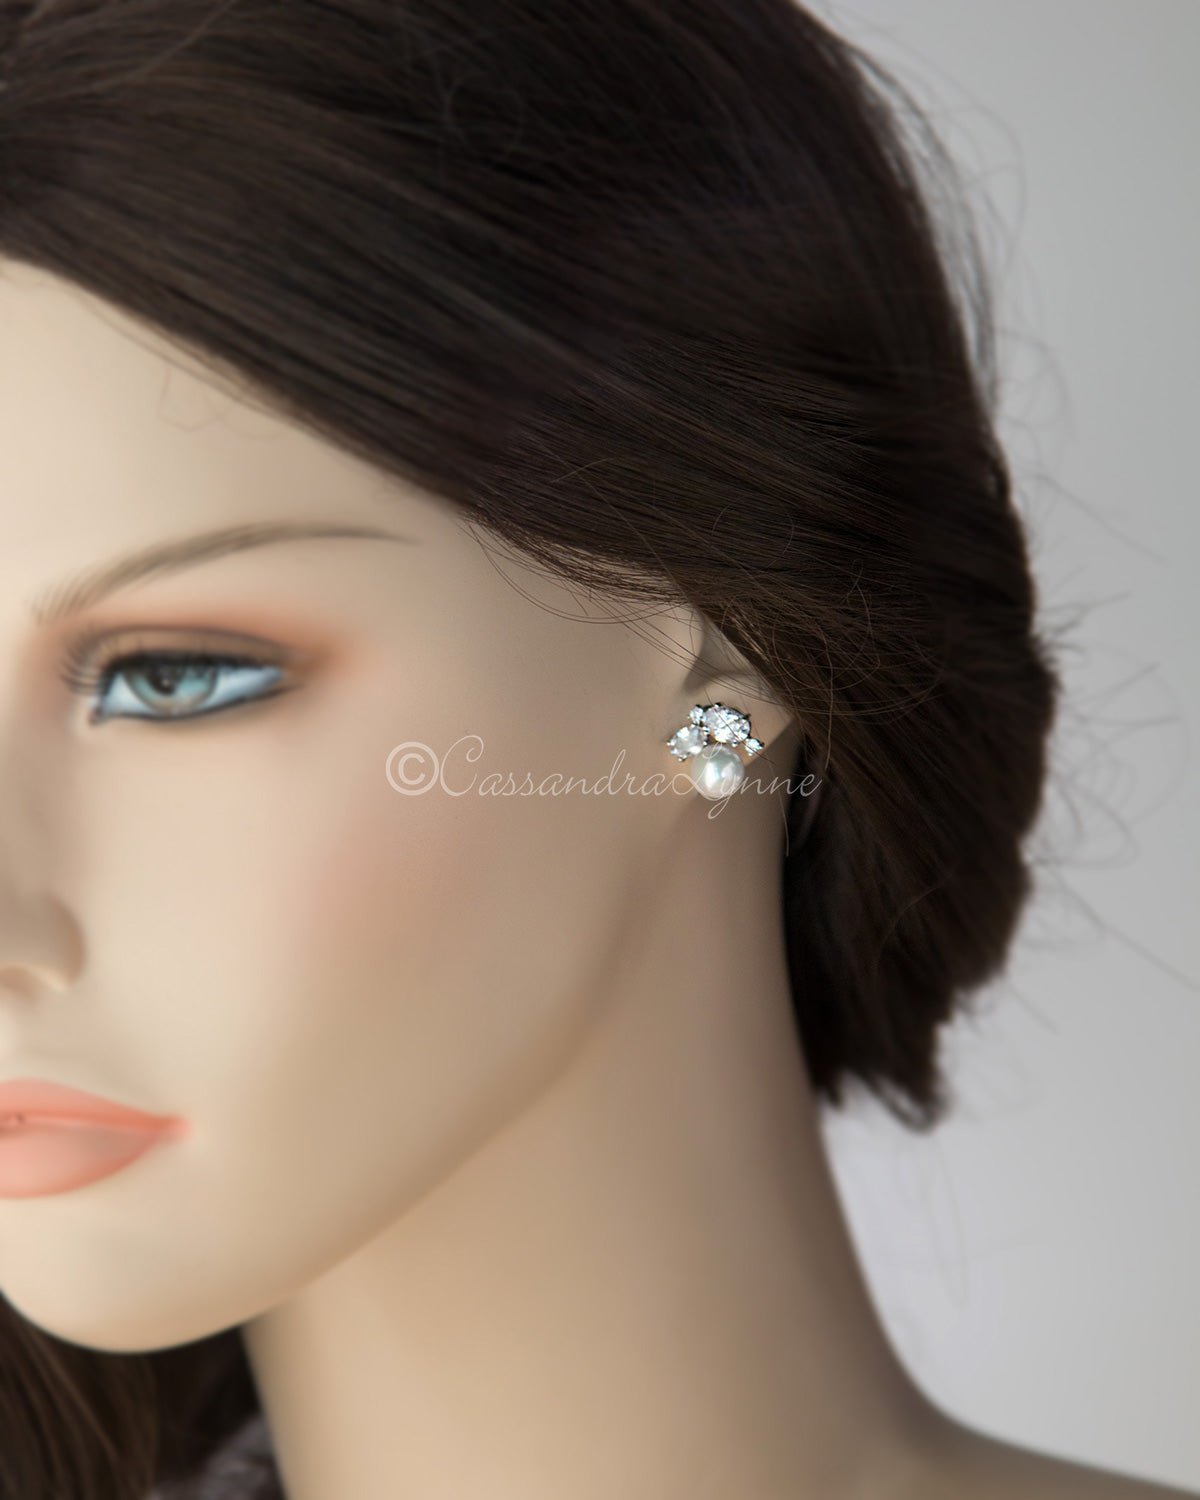 Pearl Stud Earrings with Oval CZ - Cassandra Lynne